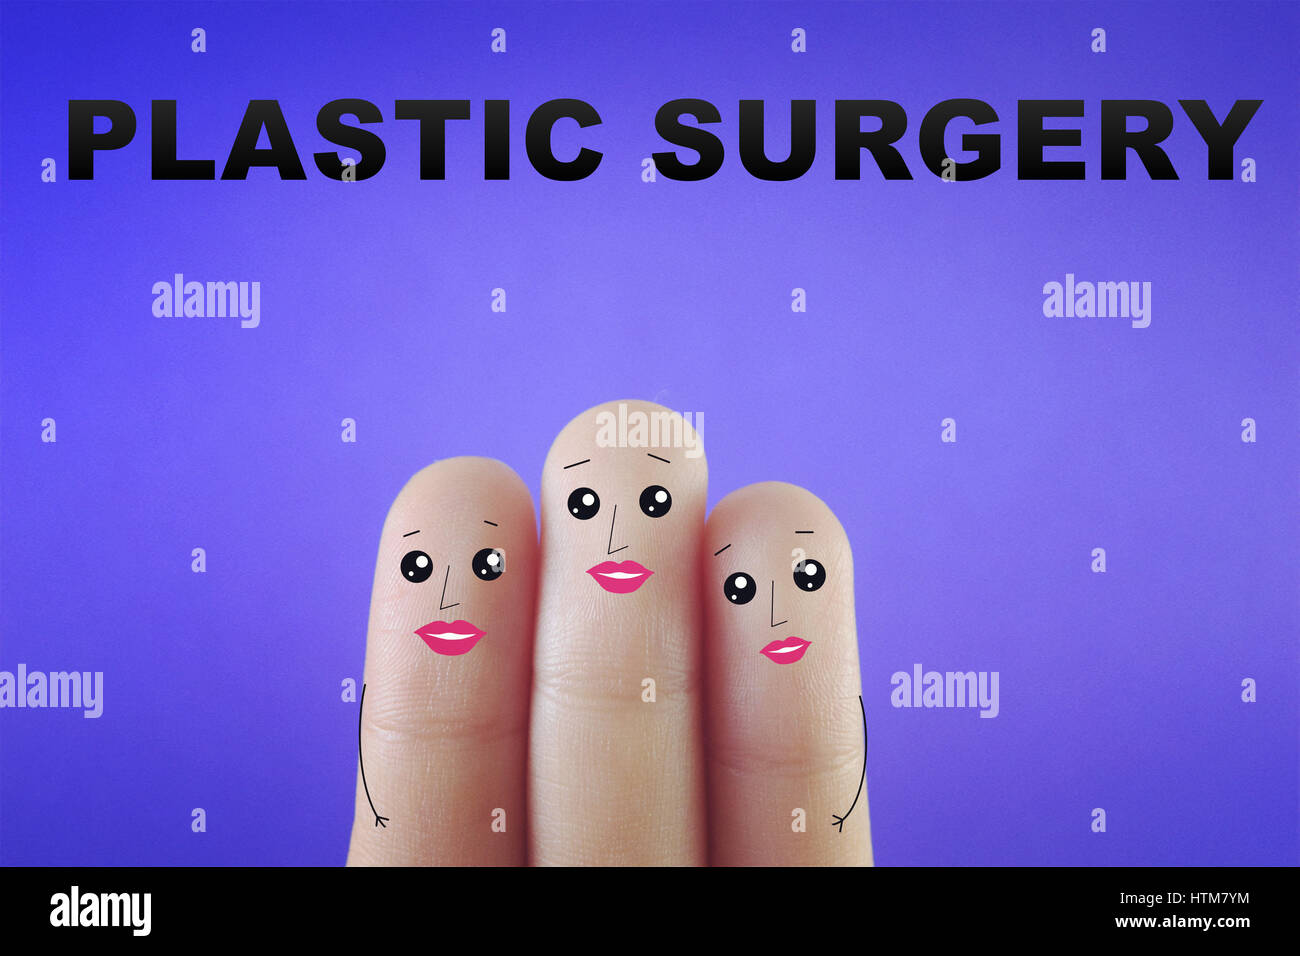 Tres dedos decorada como tres damas que tuvieron cirugía plástica. Apto para cualquier cosa acerca de la cirugía plástica. Foto de stock